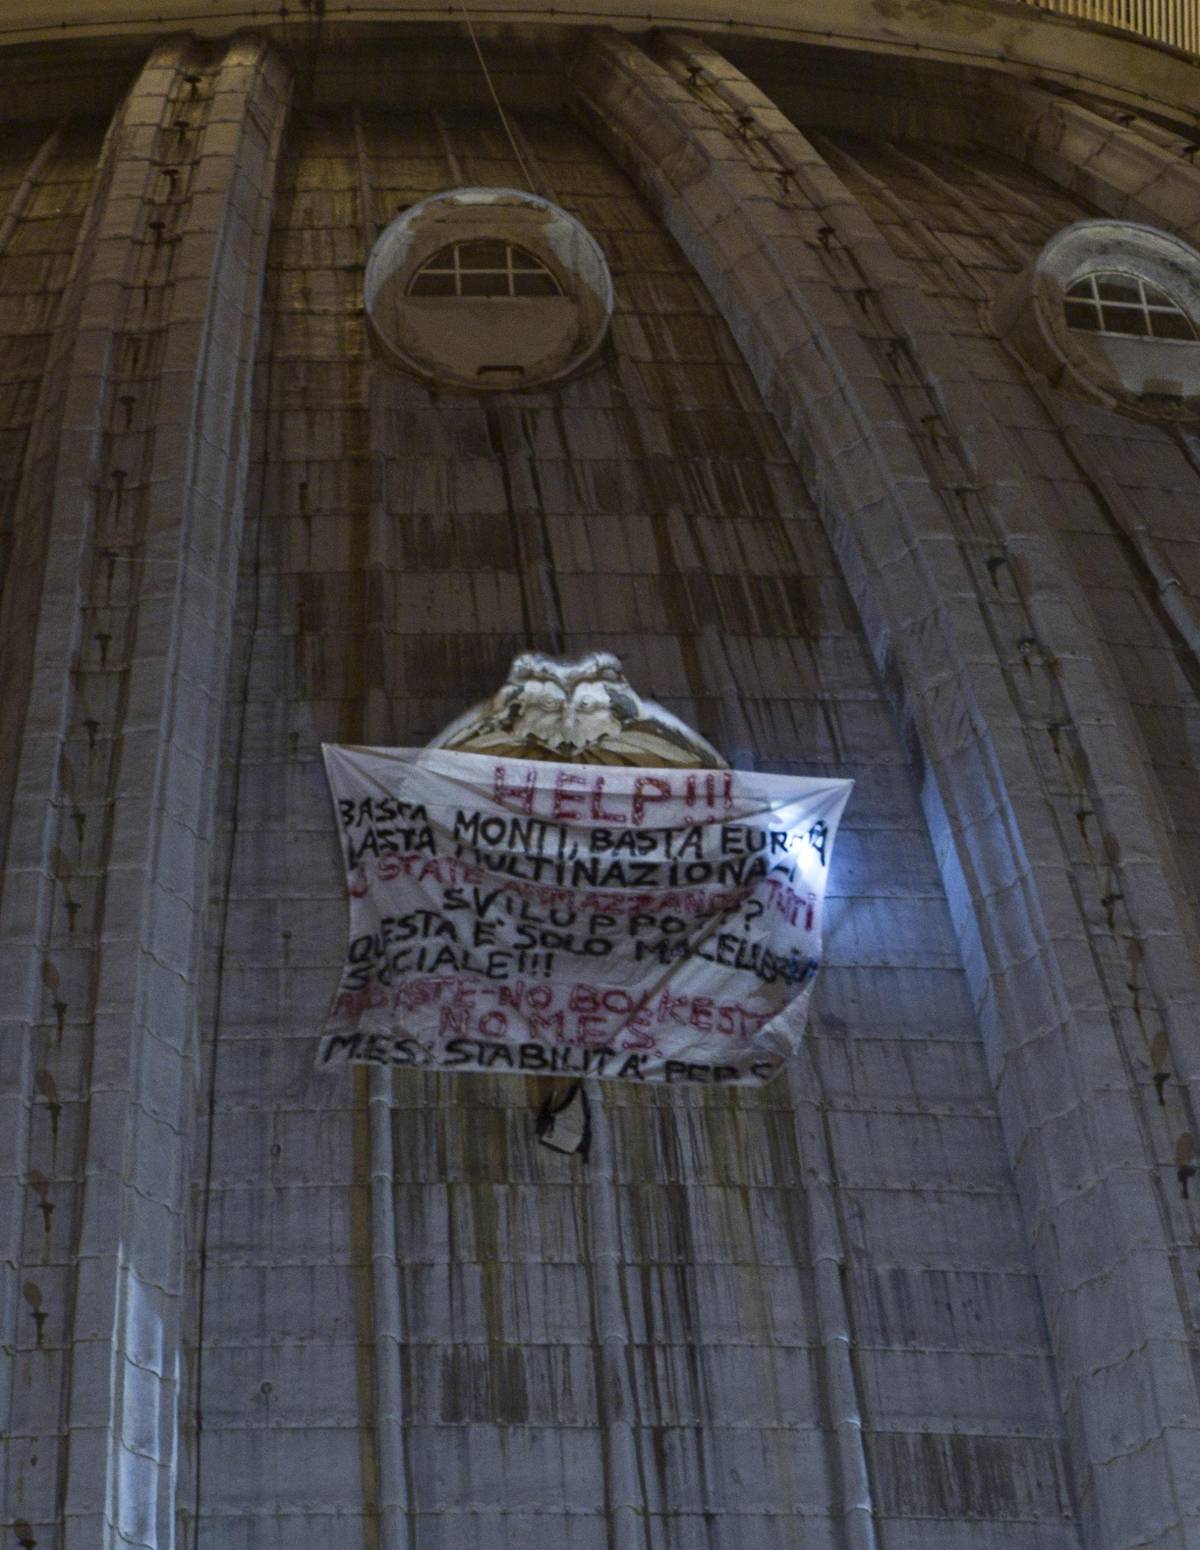 Roma, per protesta si arrampica sul Cupolone: "Basta Monti, basta Europa"